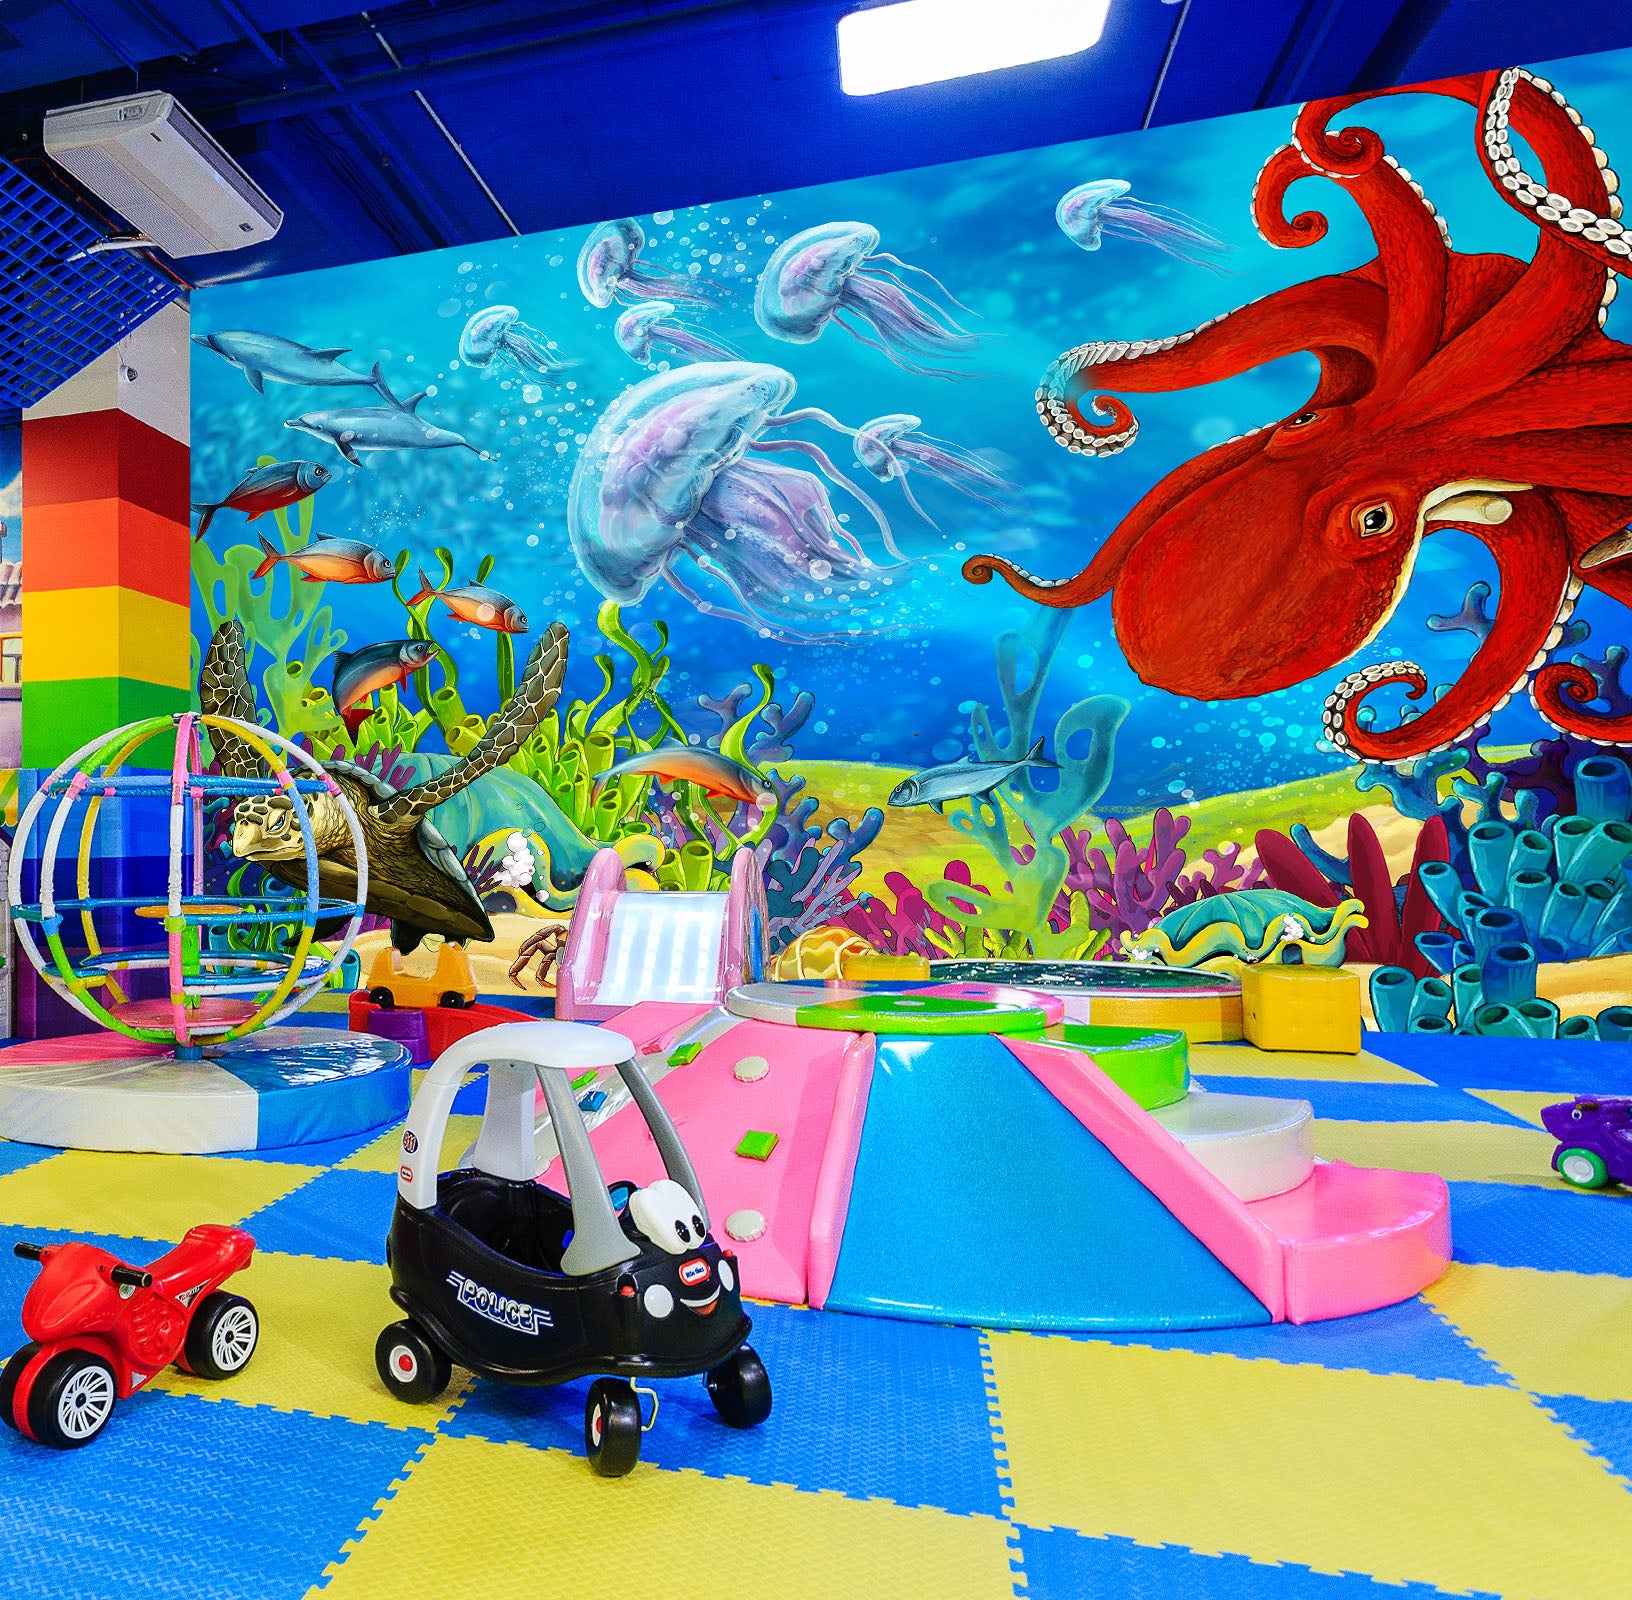 3D Ocean World Octopus 1478 Indoor Play Centres Wall Murals